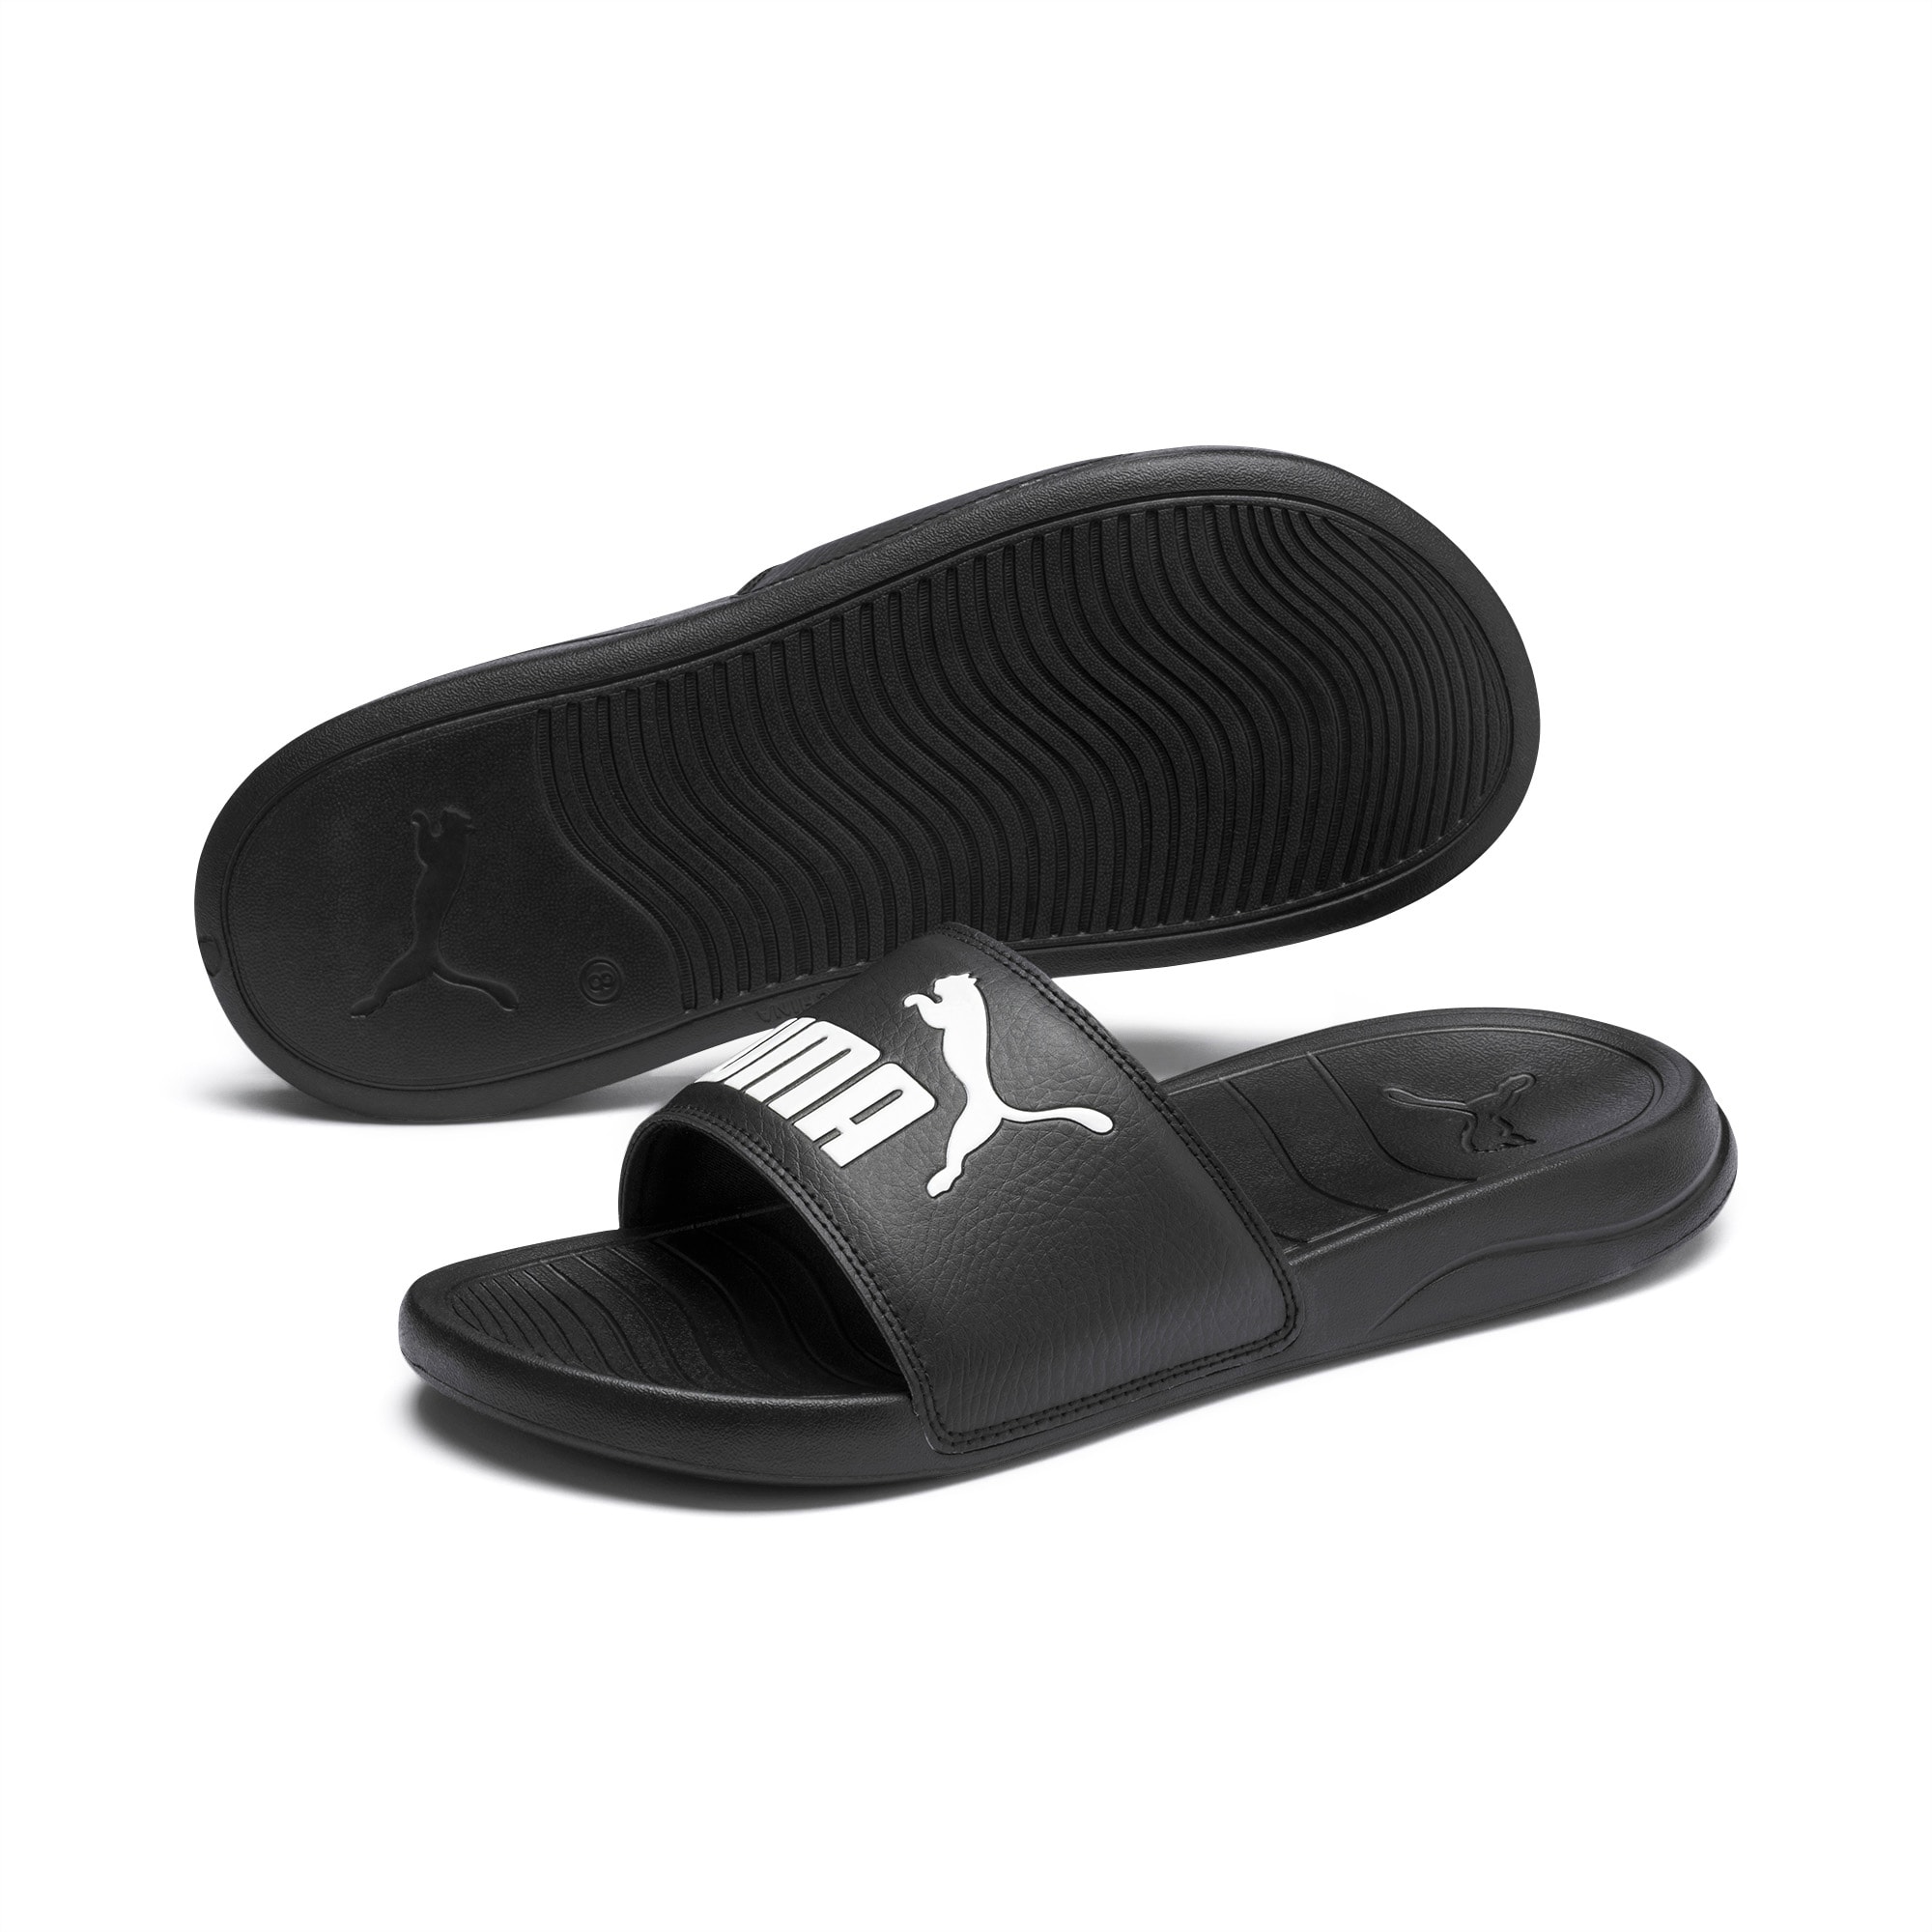 Women's PUMA Popcat 20 Sandals, Black/White, Size 35,5, Shoes